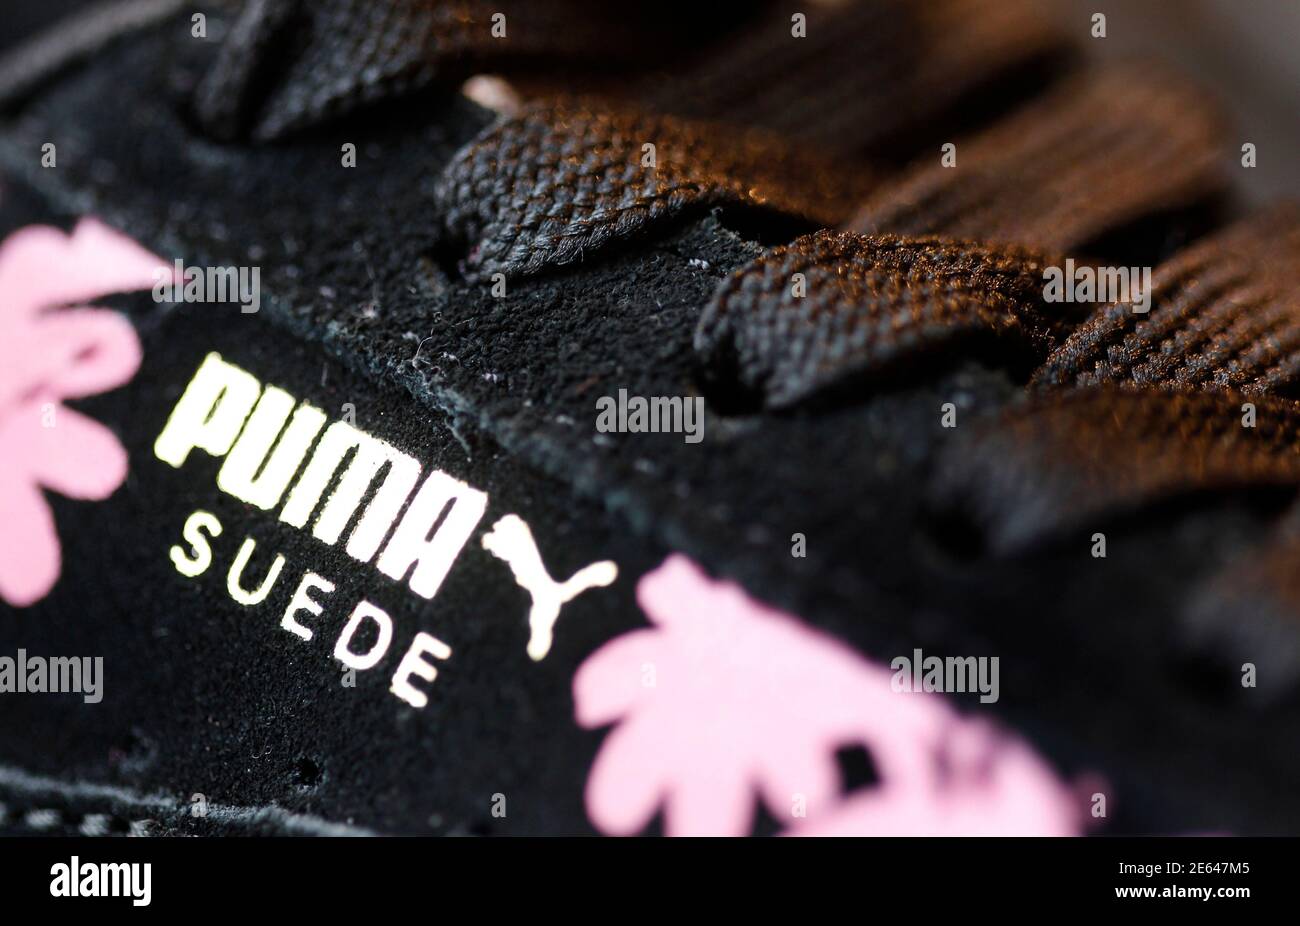 El logo de la firma alemana de artículos deportivos Puma se ve en un zapato  después de la conferencia anual de prensa de la compañía en Herzogenaurach  el 20 de febrero de